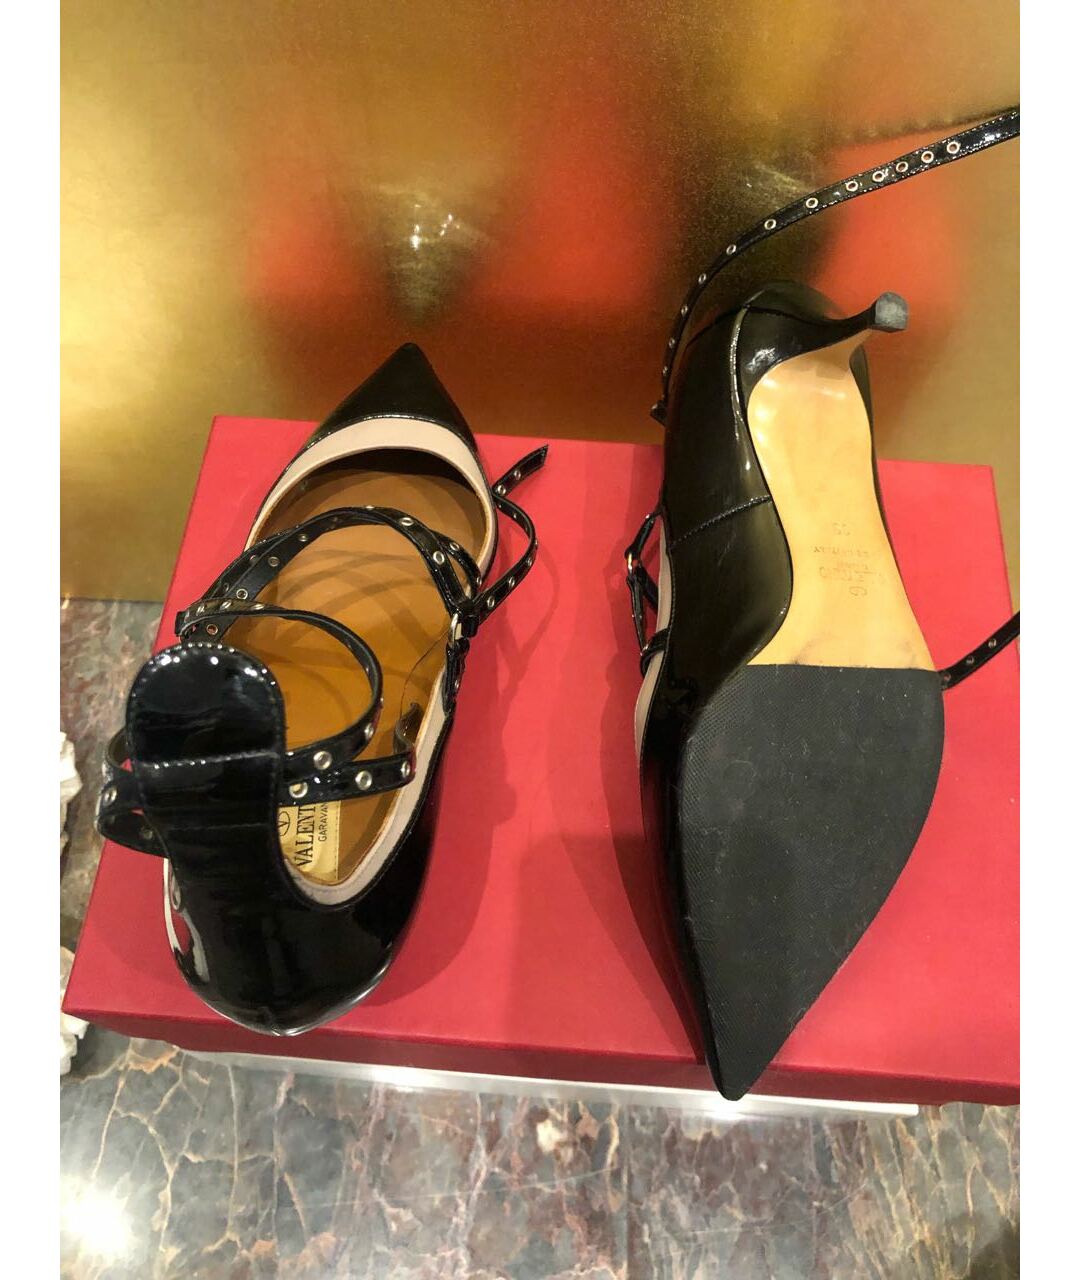 VALENTINO GARAVANI Черные туфли из лакированной кожи, фото 3